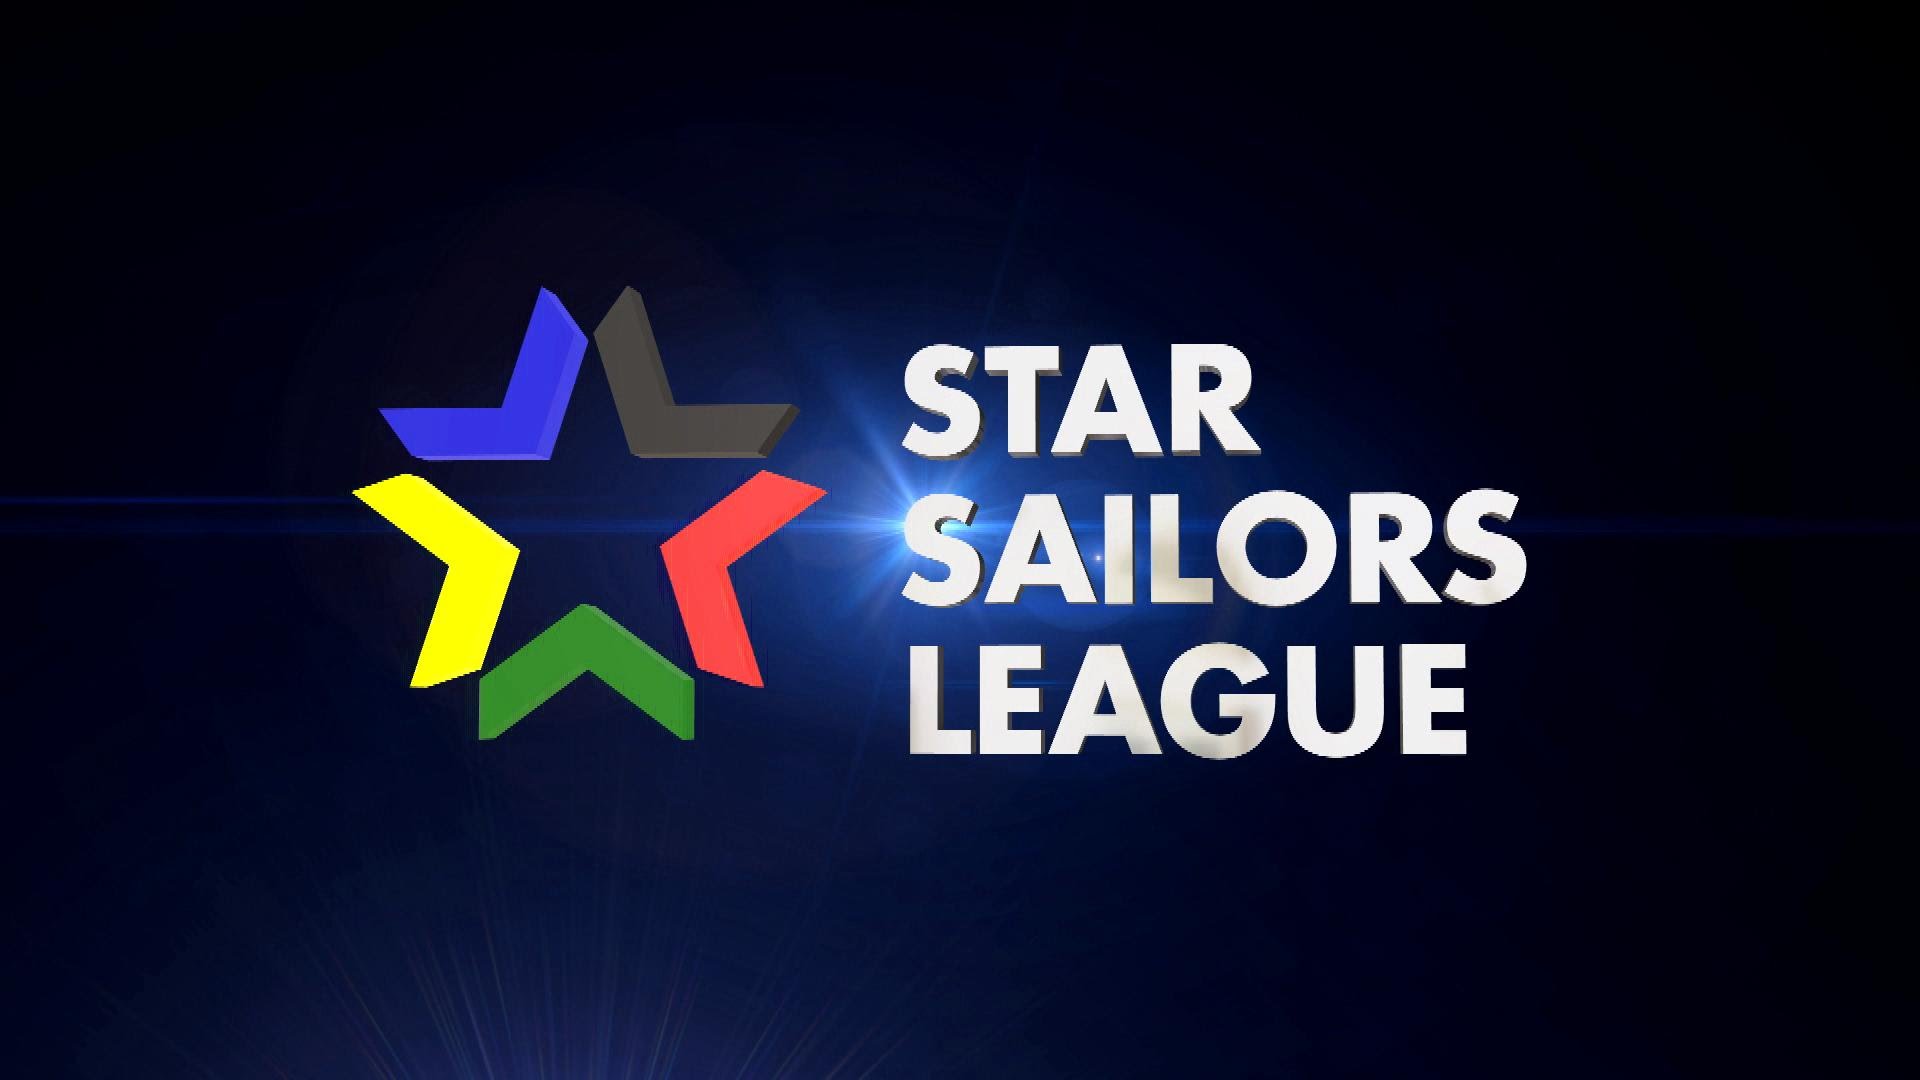 Sport : Stars Sailors League - La Course de voile commence dans 10 minutes